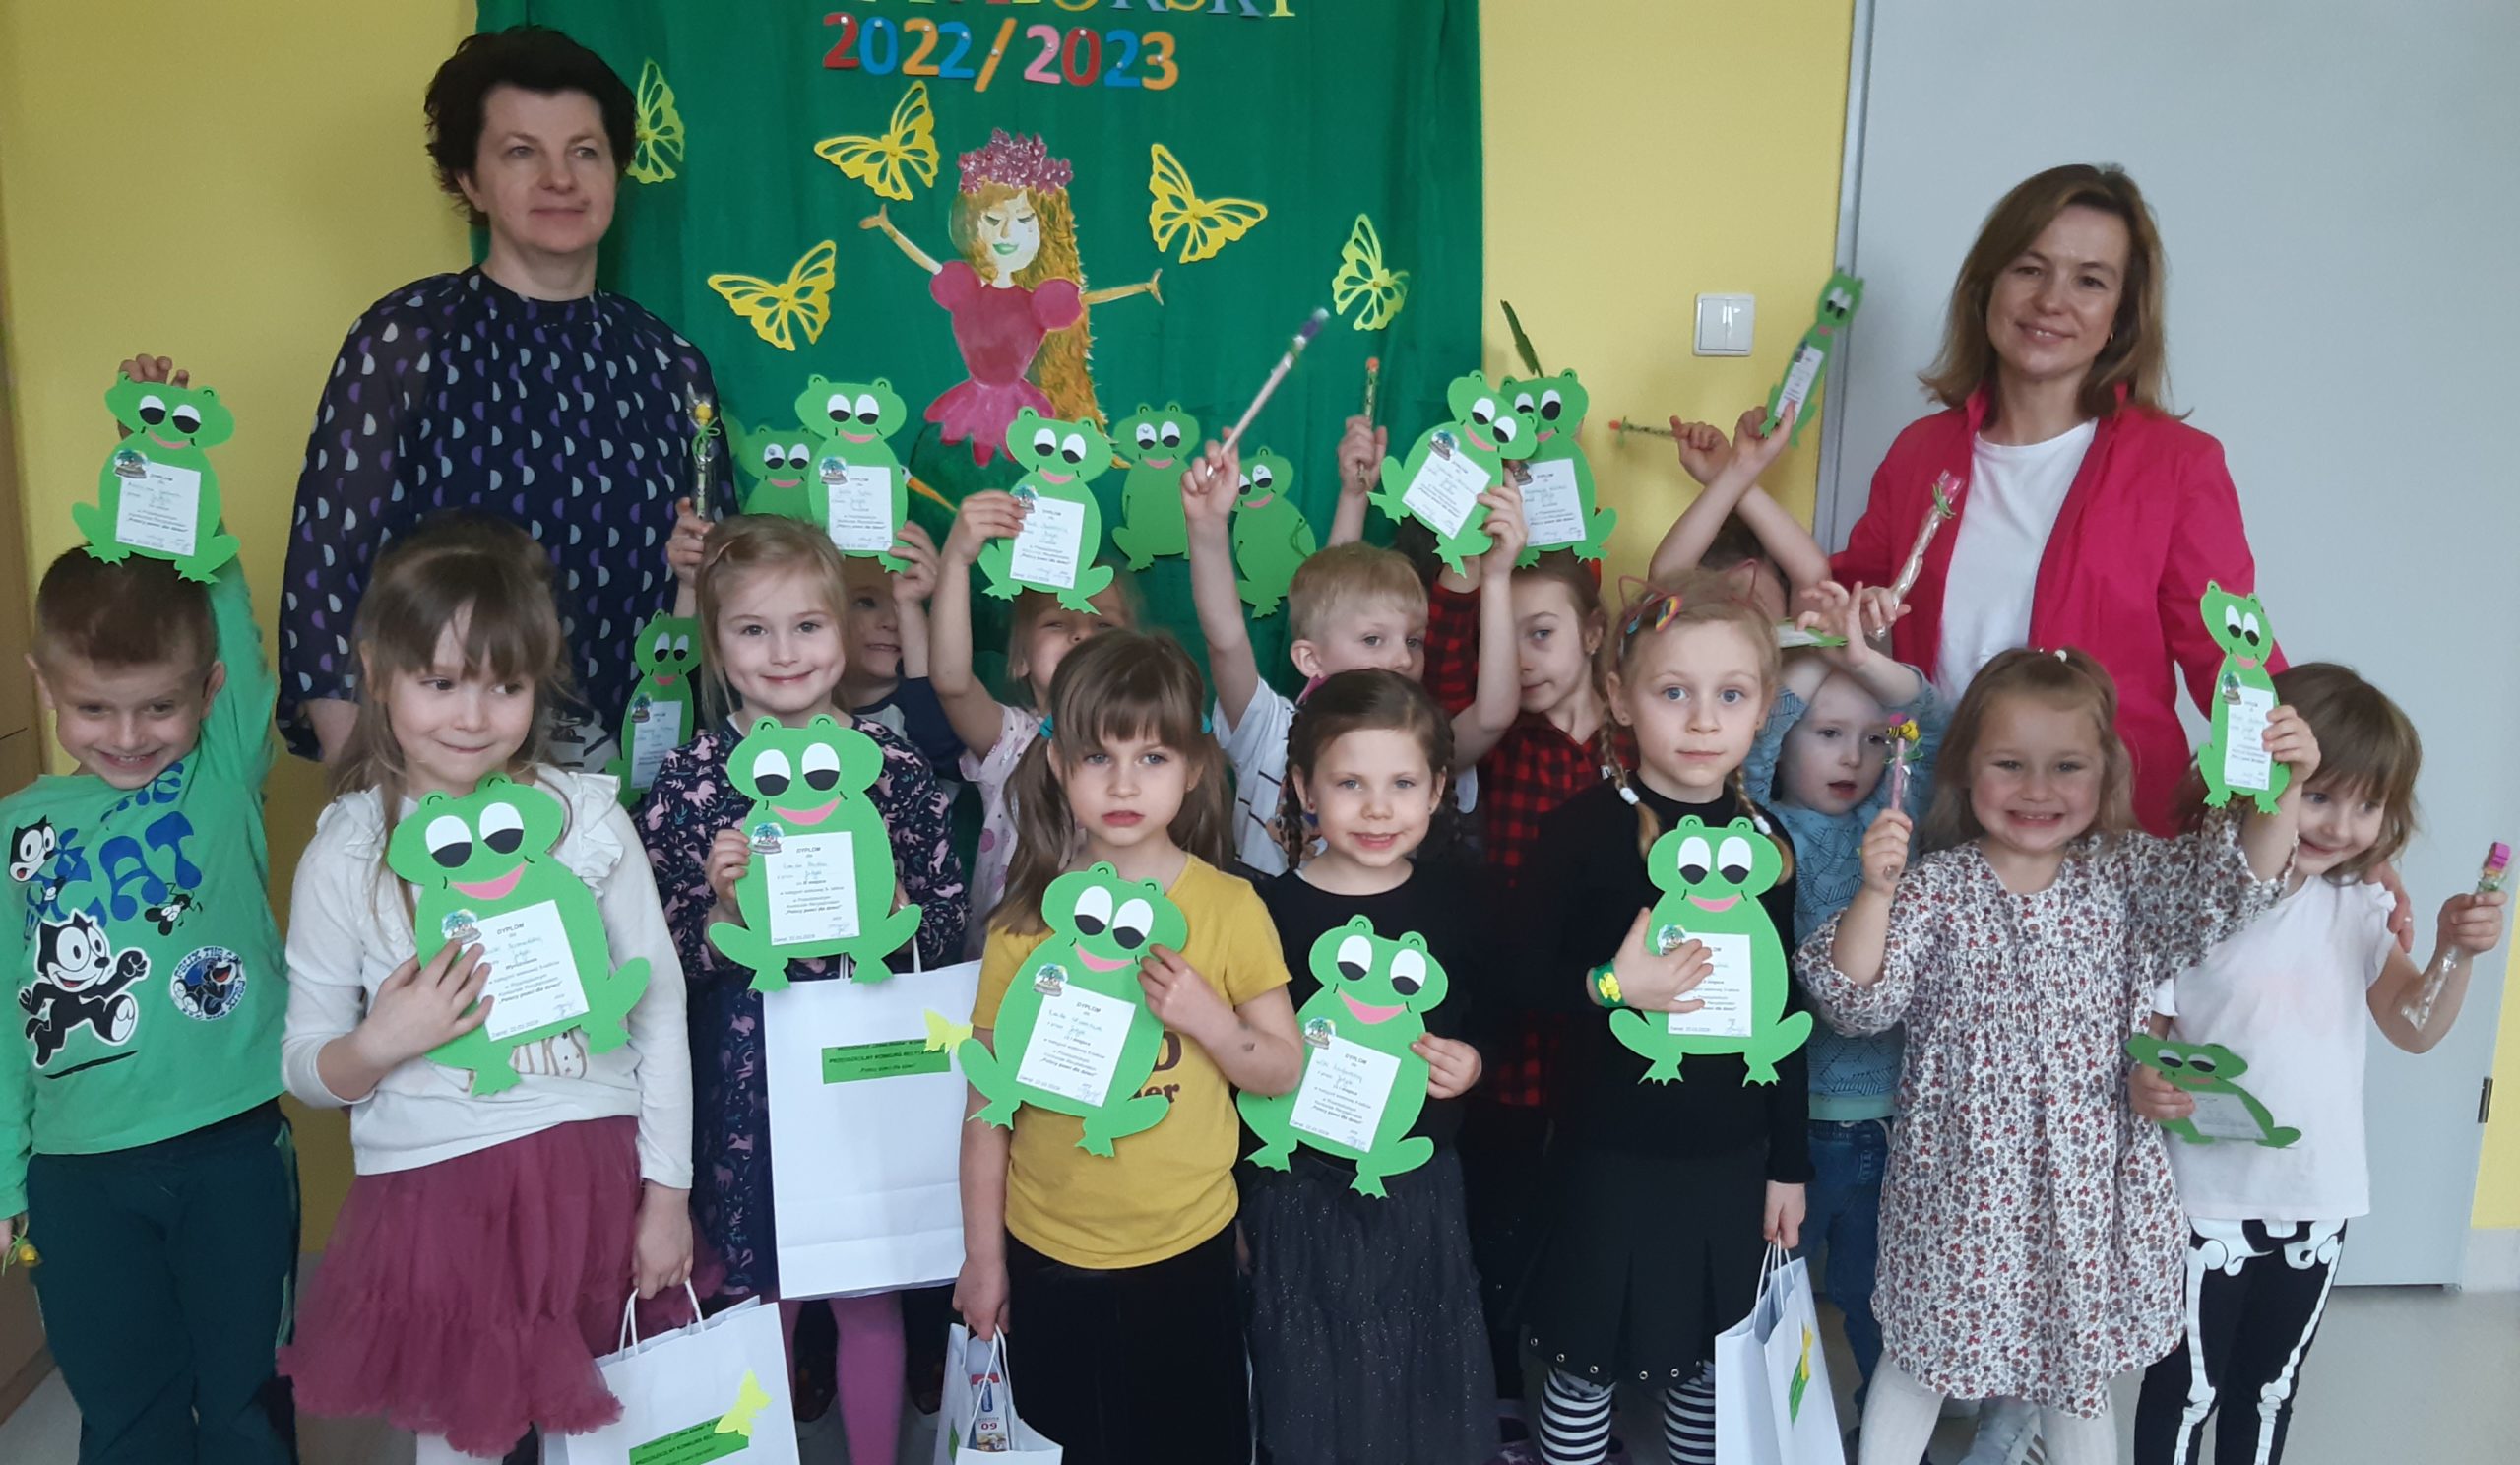 Przedszkole w Zakręcie. Przedszkolny Konkurs Recytatorski „Polscy poeci dla dzieci”. Dzieci prezentują dyplomy w kształcie zielonych żabek.